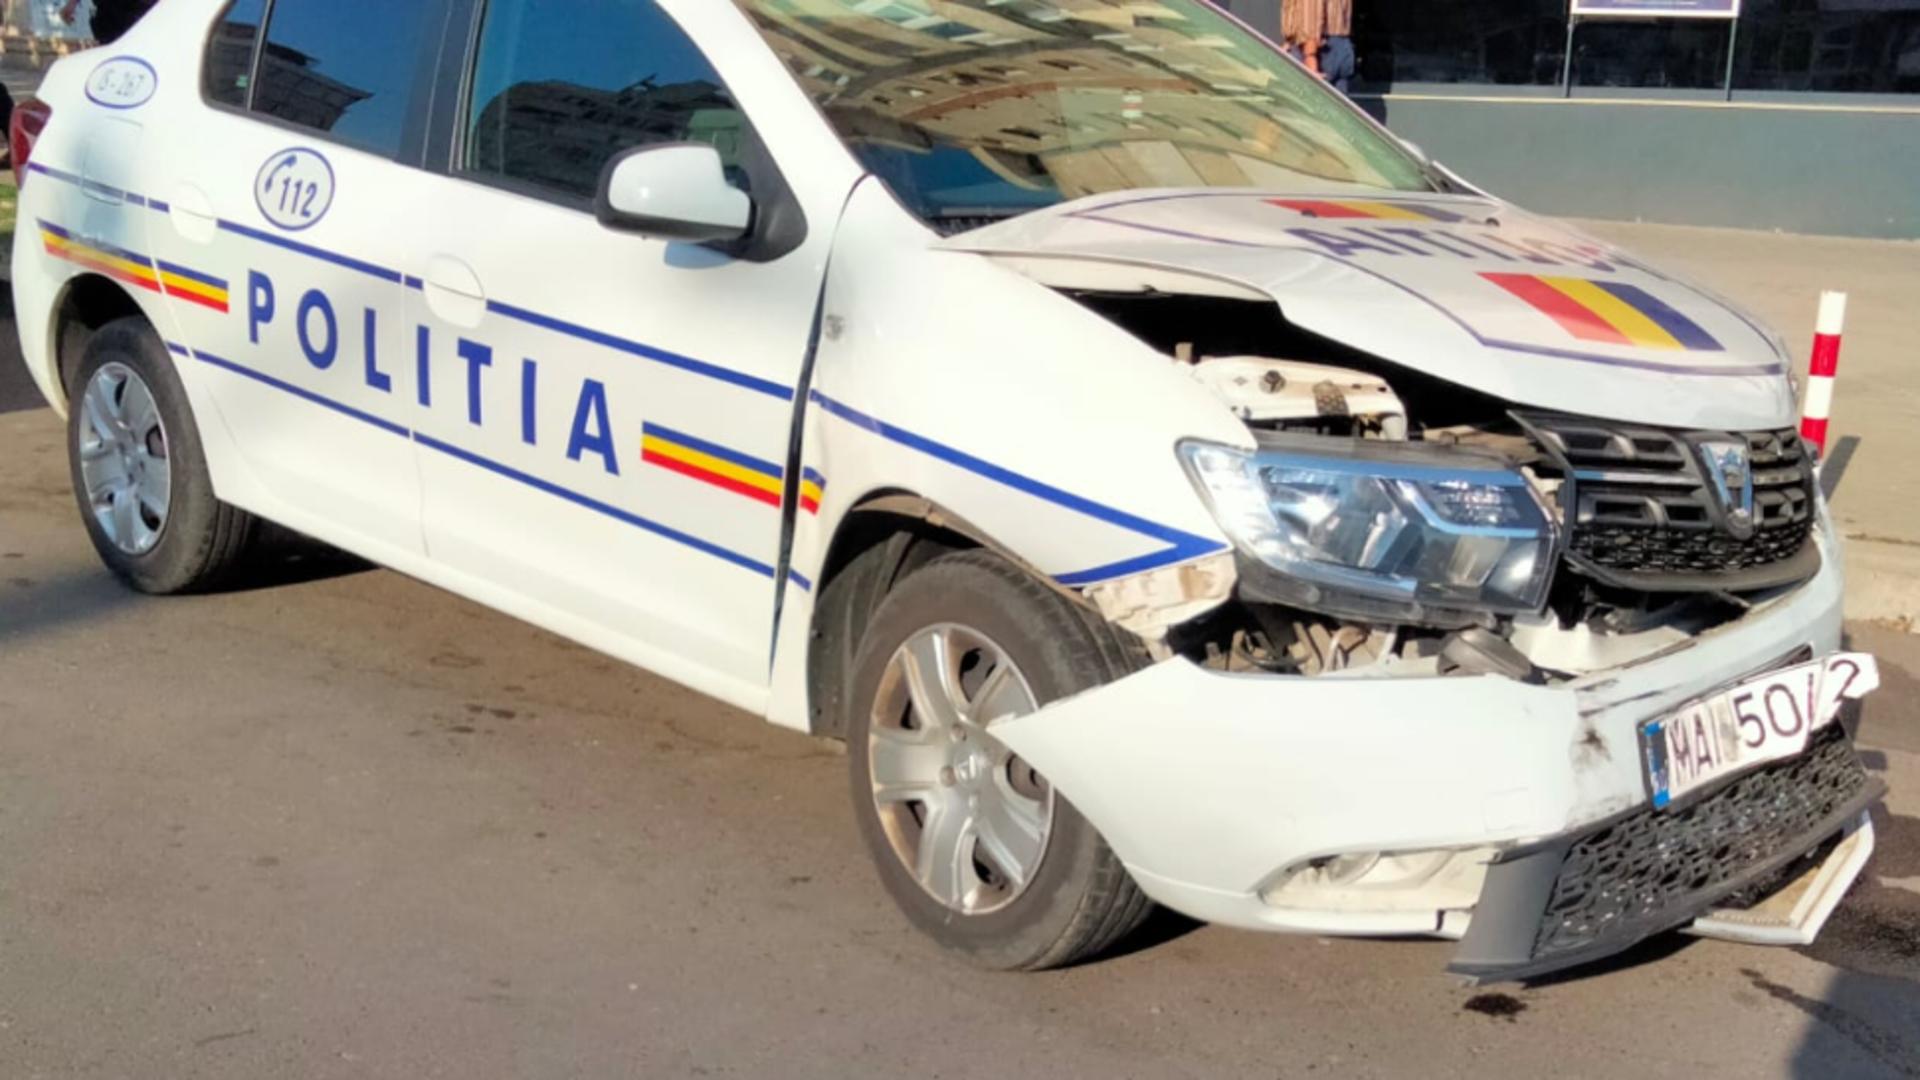 Carambol în Iași cu 3 mașini: O autospecială de poliție a provocat coliziunea - Primele imagini cu accidentul